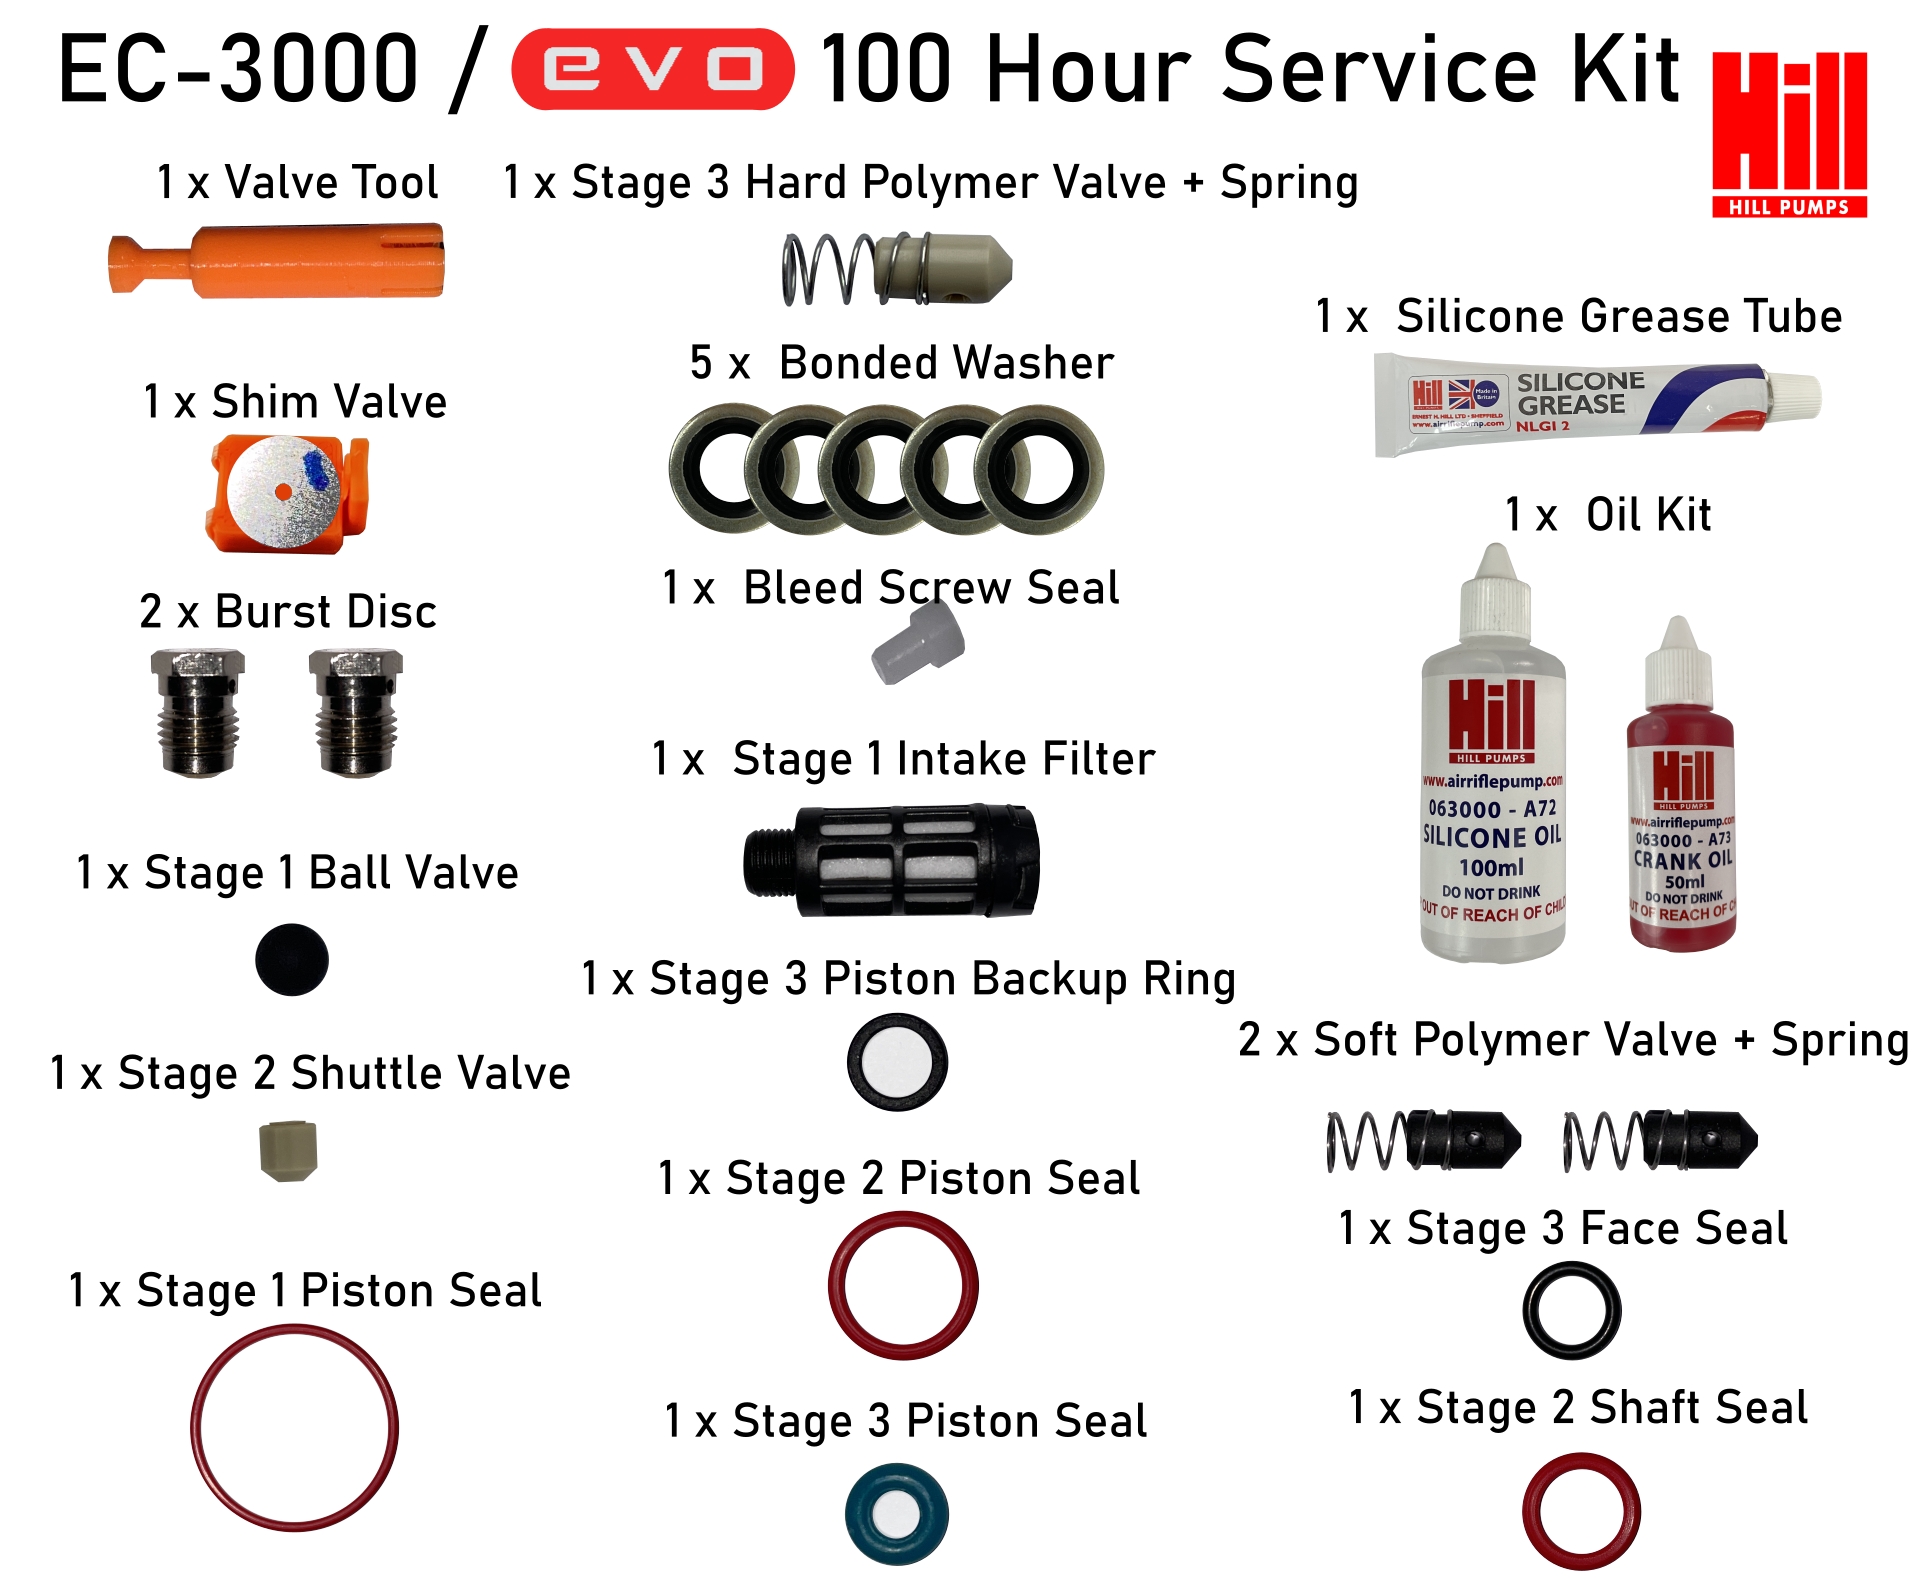 EC-3000 / Evo 100 Hour Full Service Kit